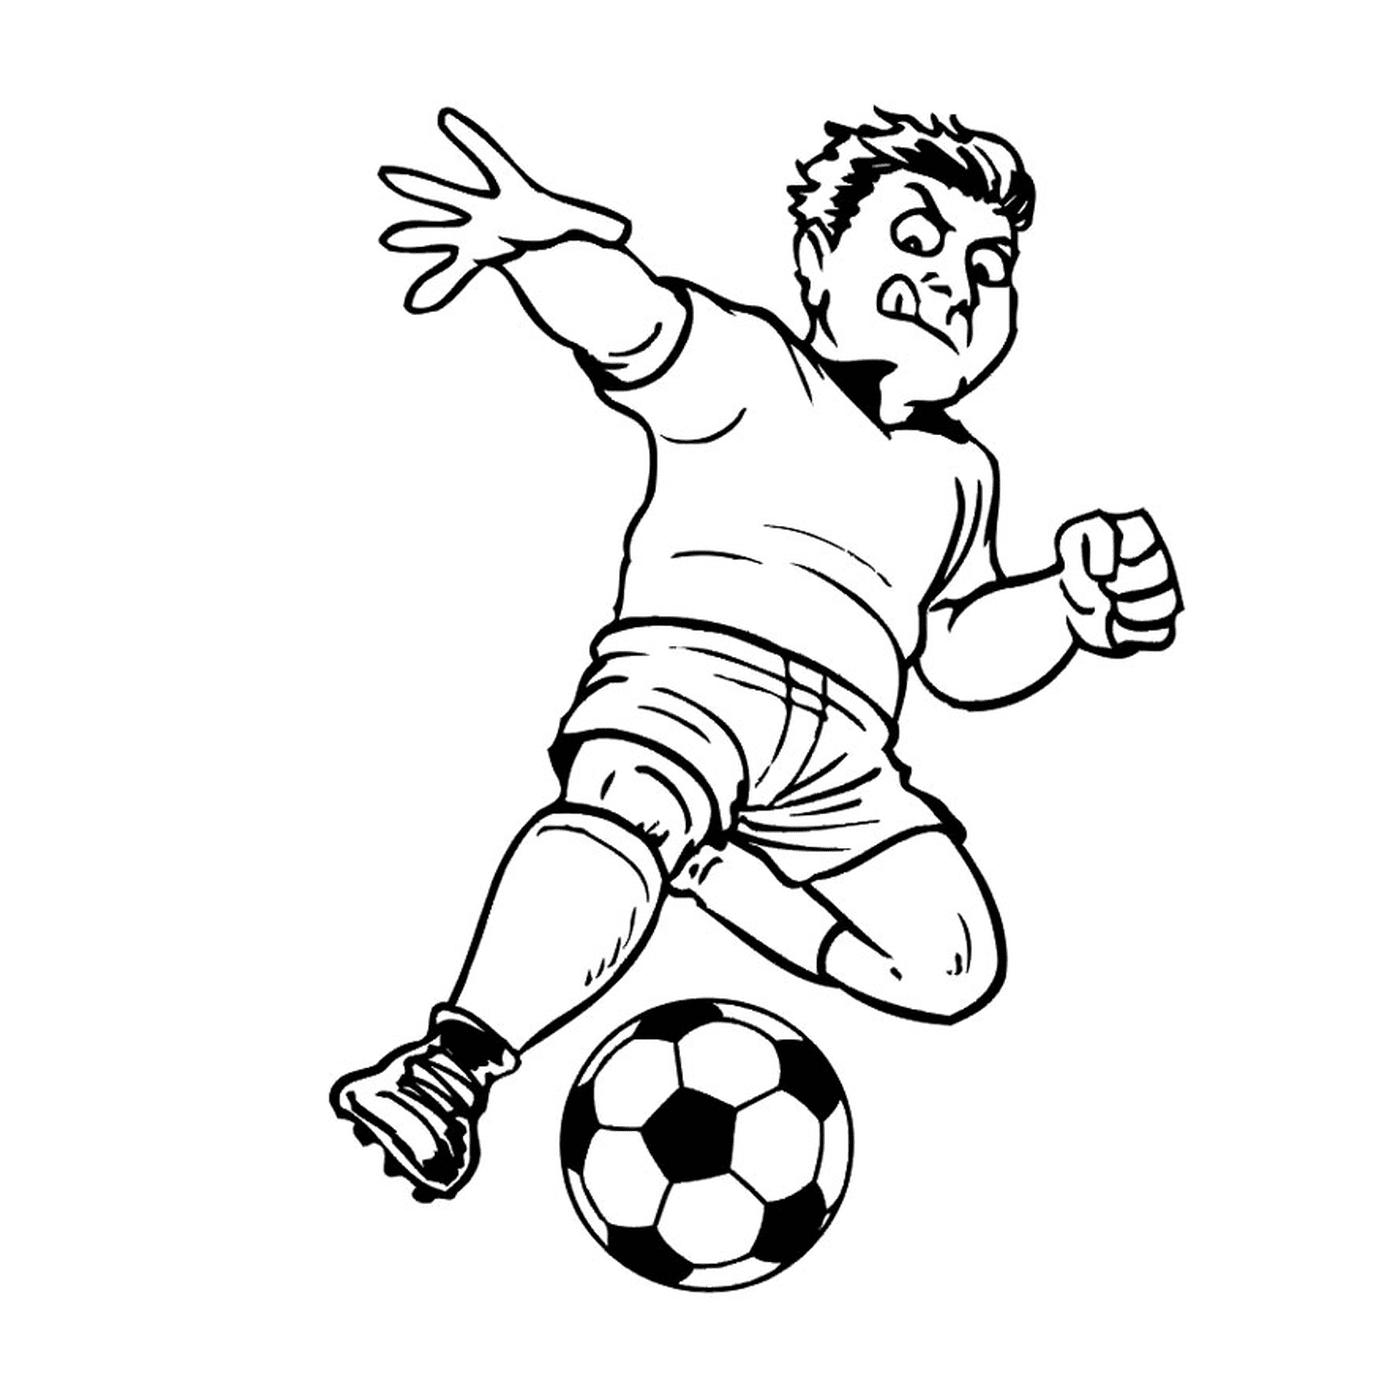  Ein Mann spielt Fußball 